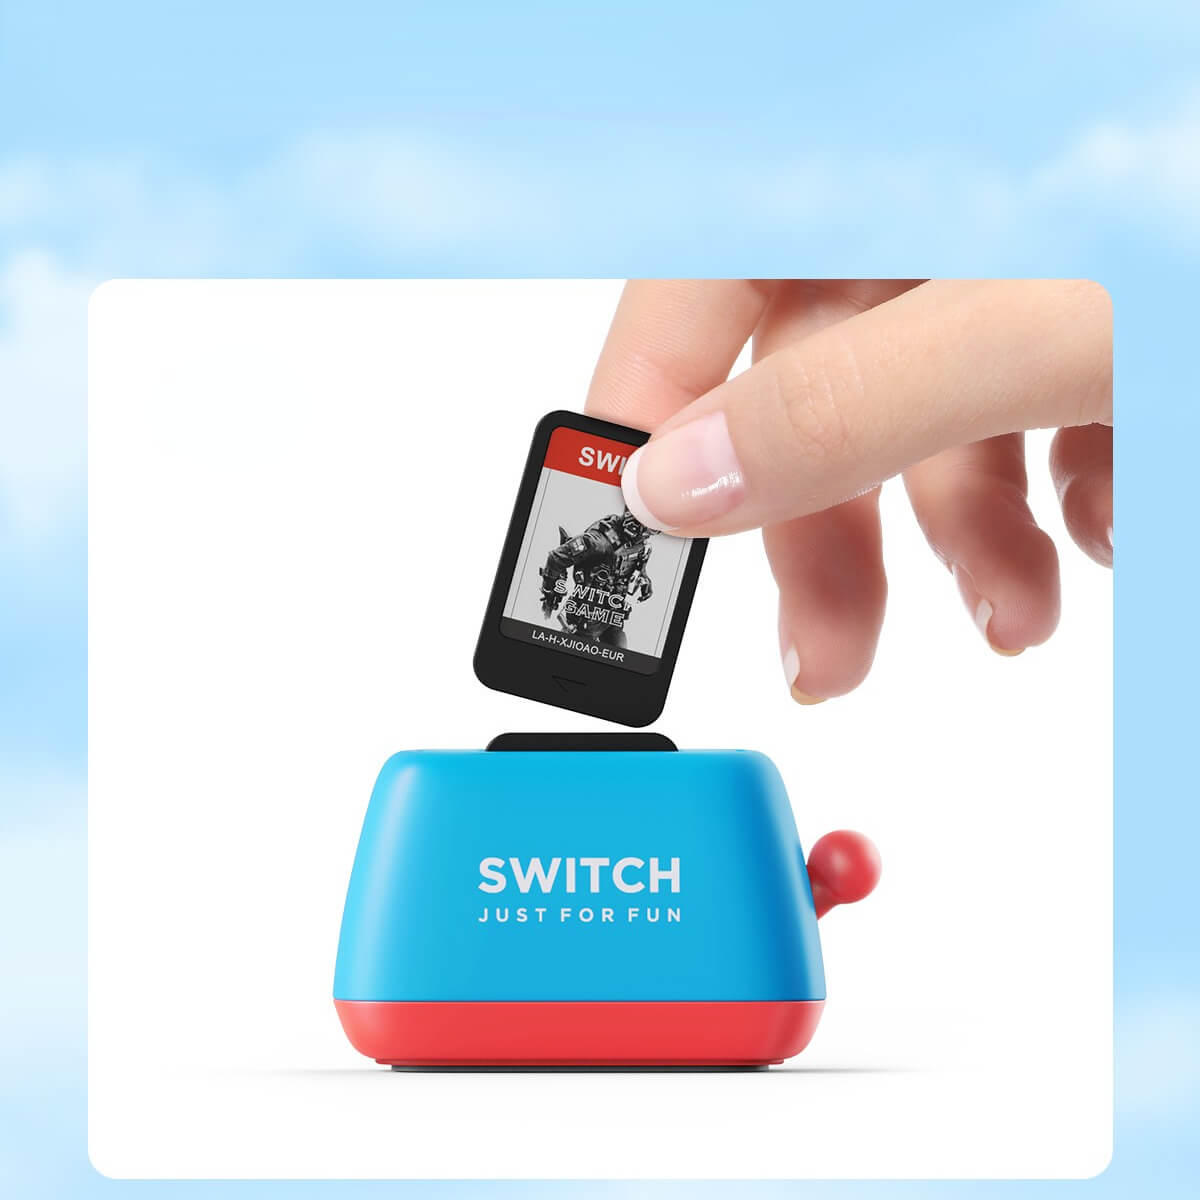 Toaster Nintendo Switch Game Card Storagebest, GameNEW TOWN BAZAAR